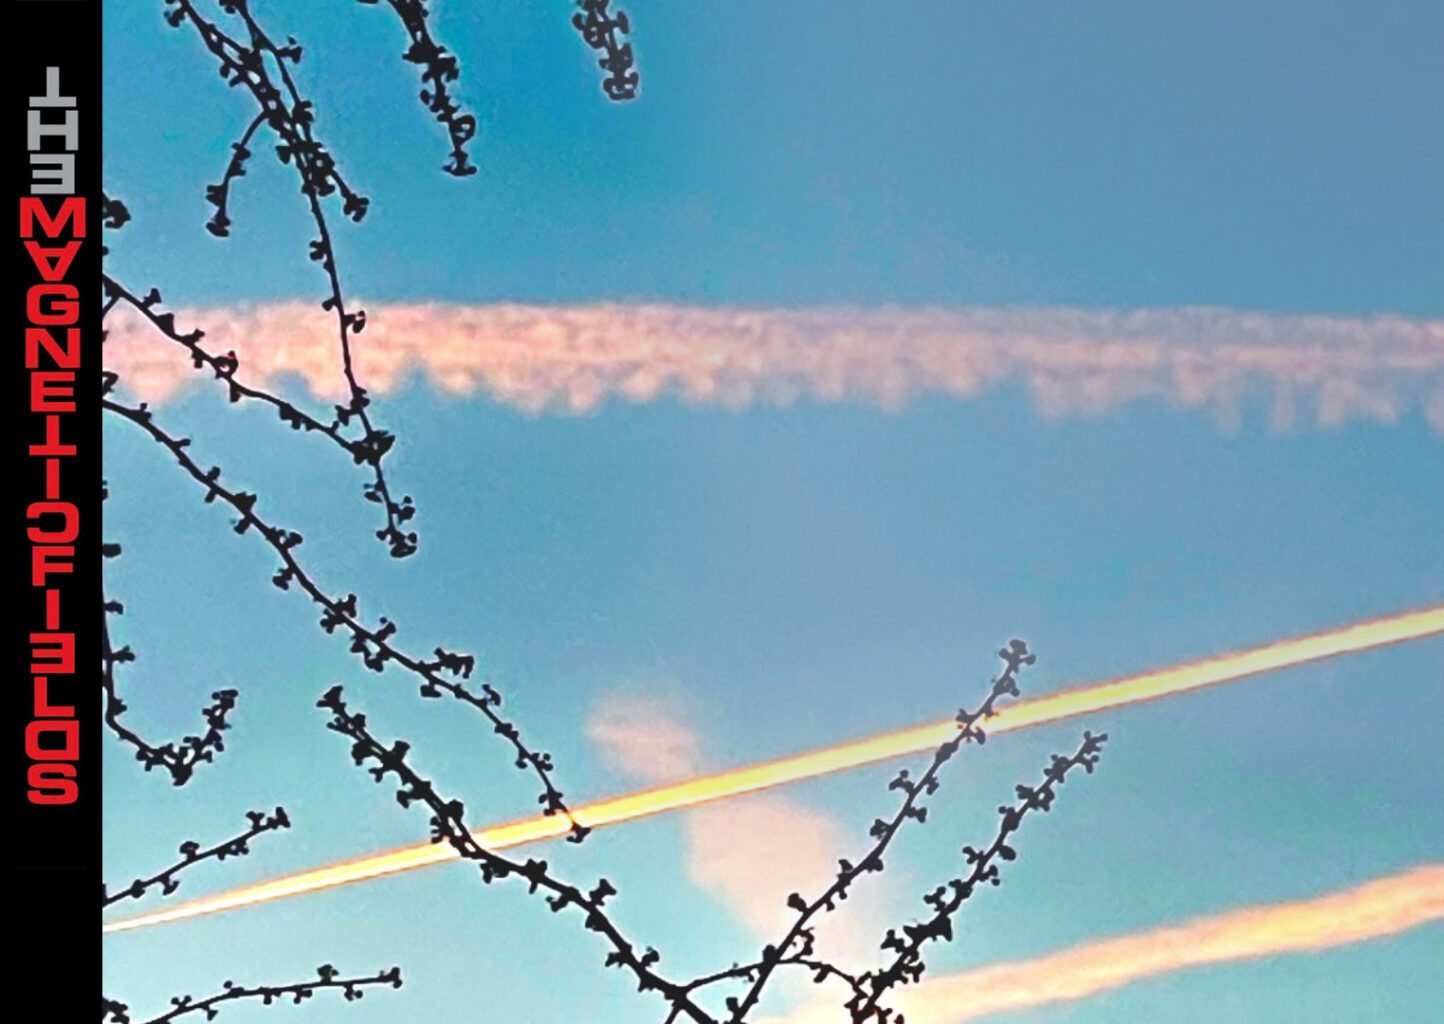 Jet Liner Trails at sunset